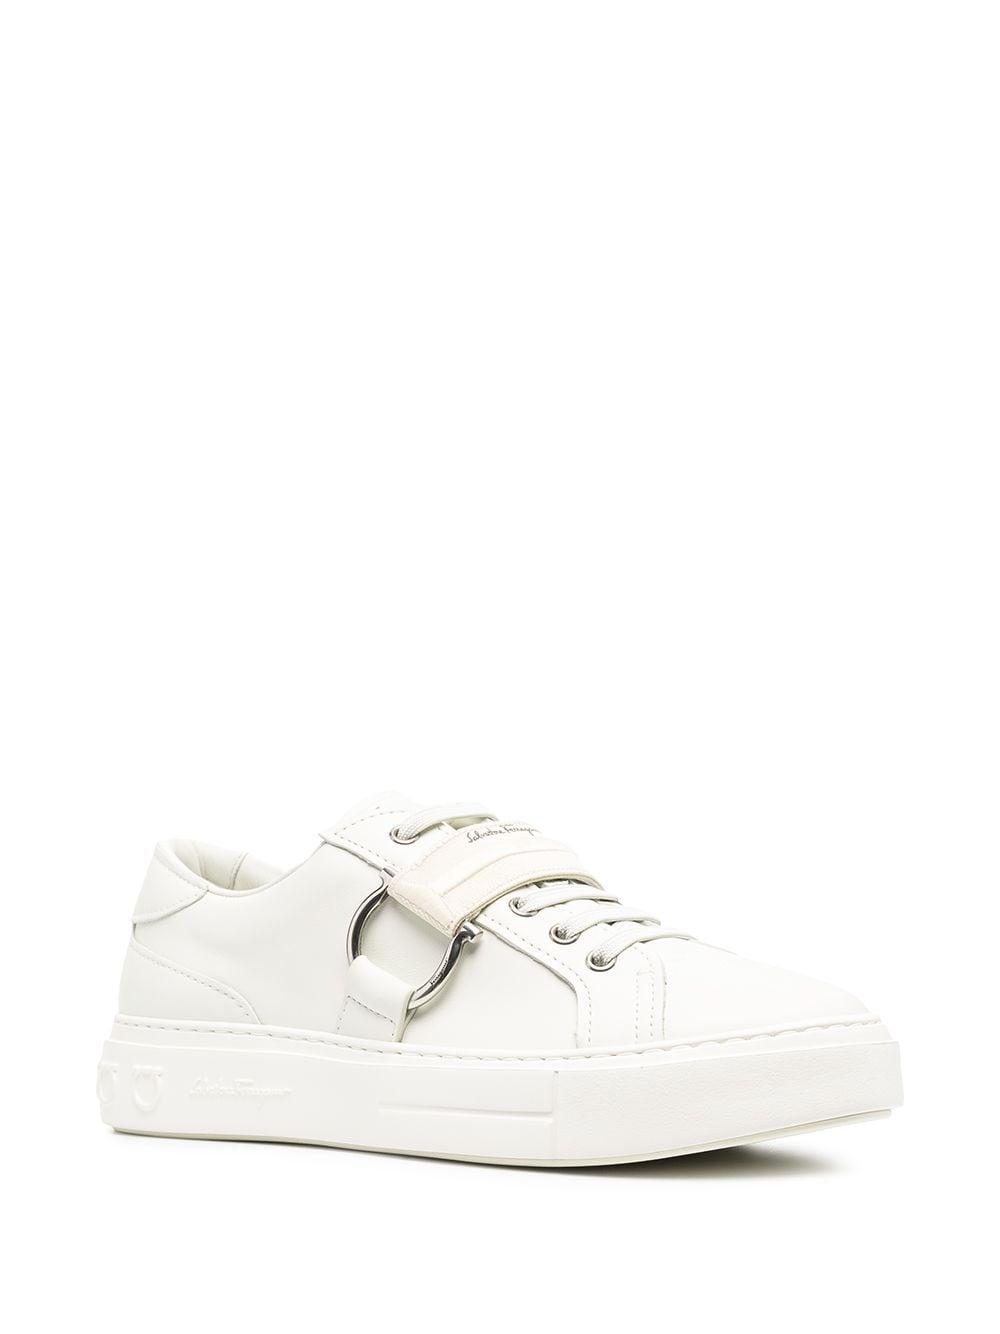 Ferragamo Gancini Buckle Strap Sneakers in White for Men | Lyst